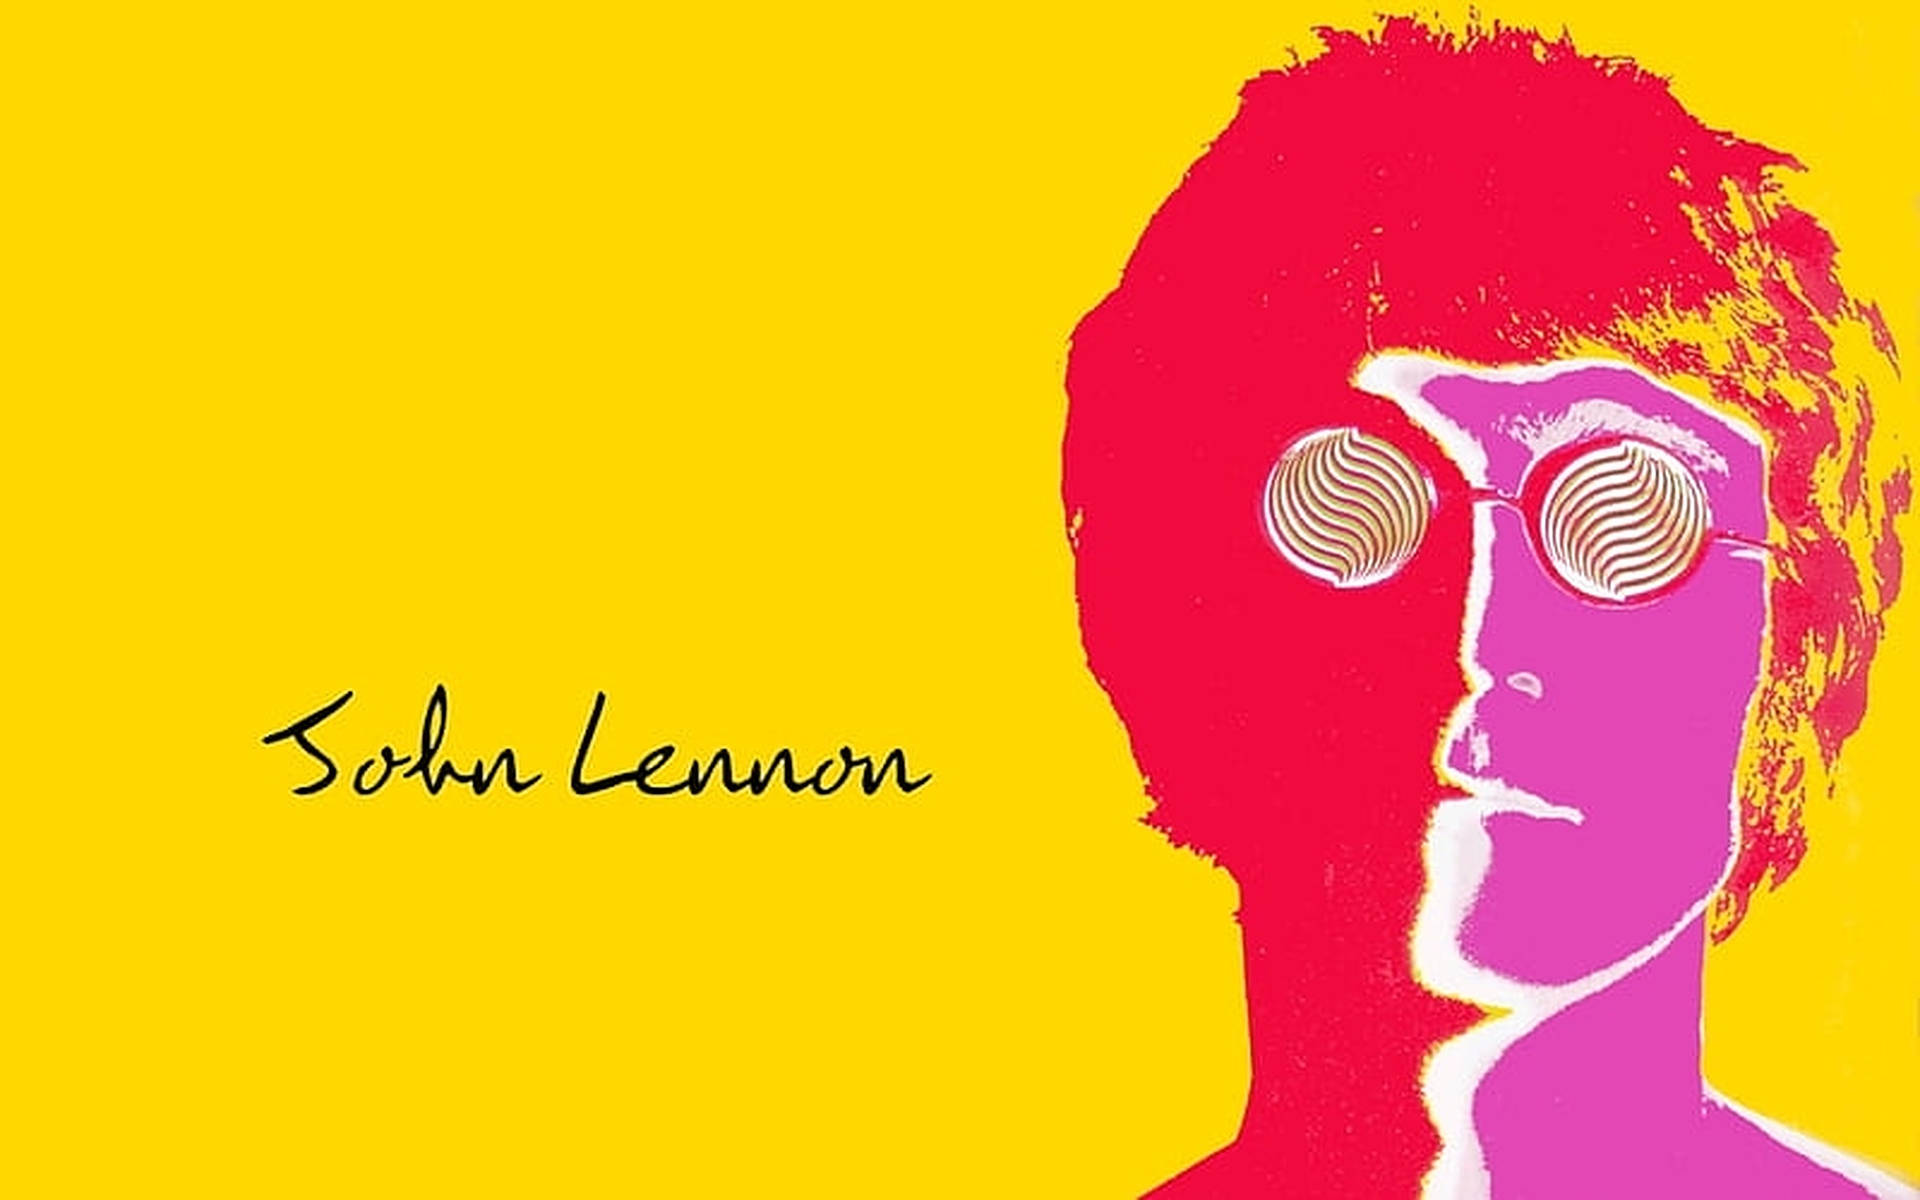 John Lennon Retro Poster Background